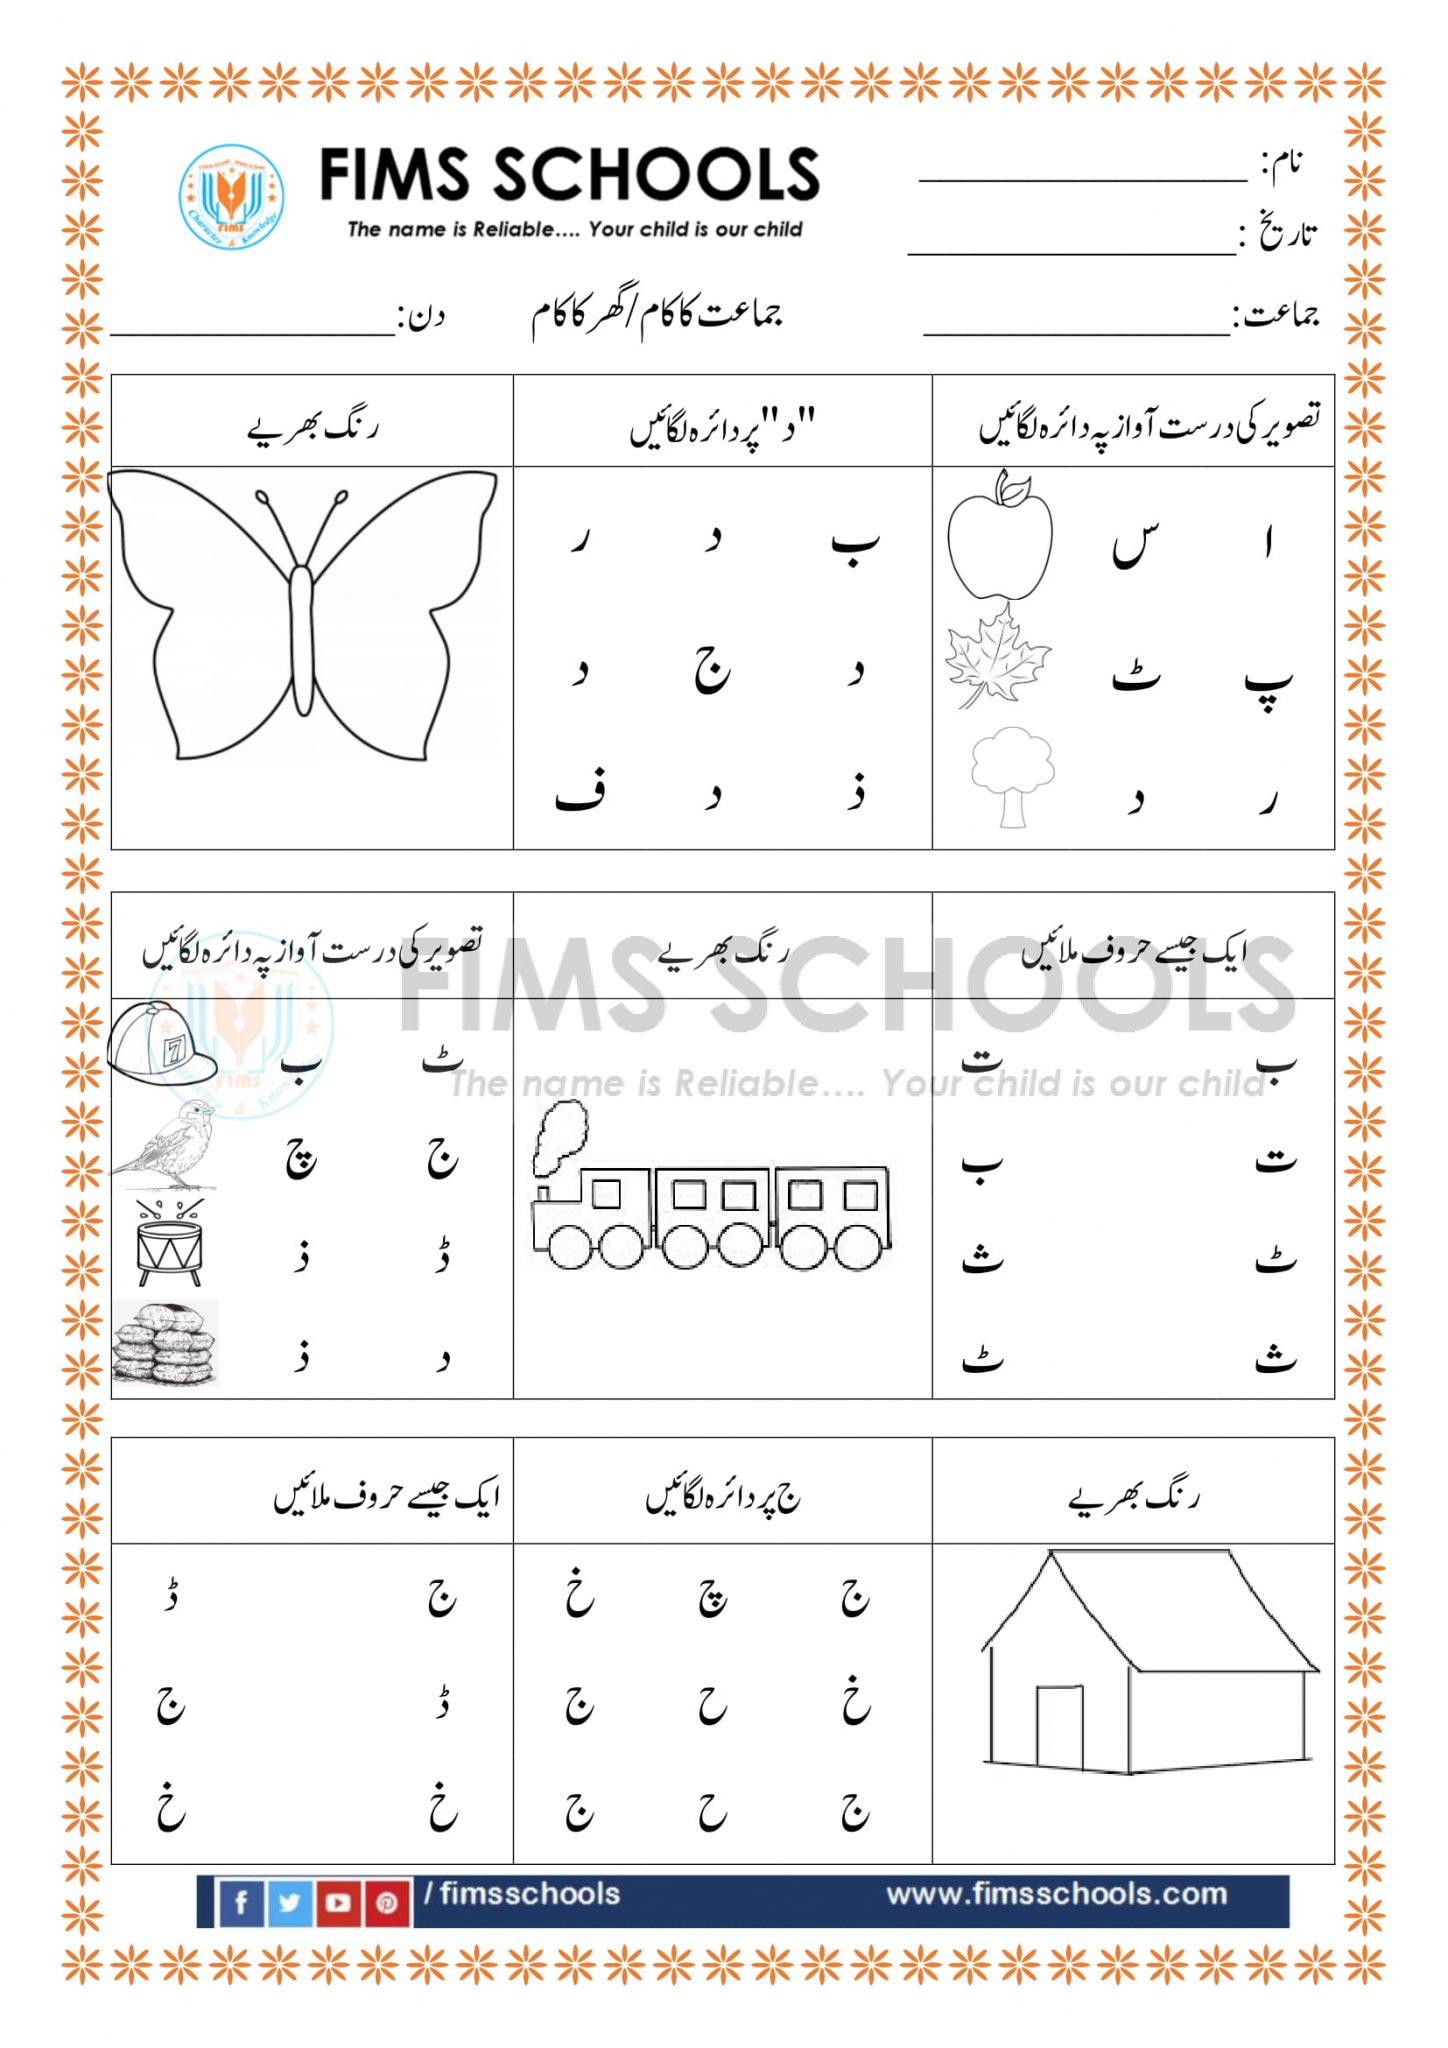 urdu alphabet activities preschool